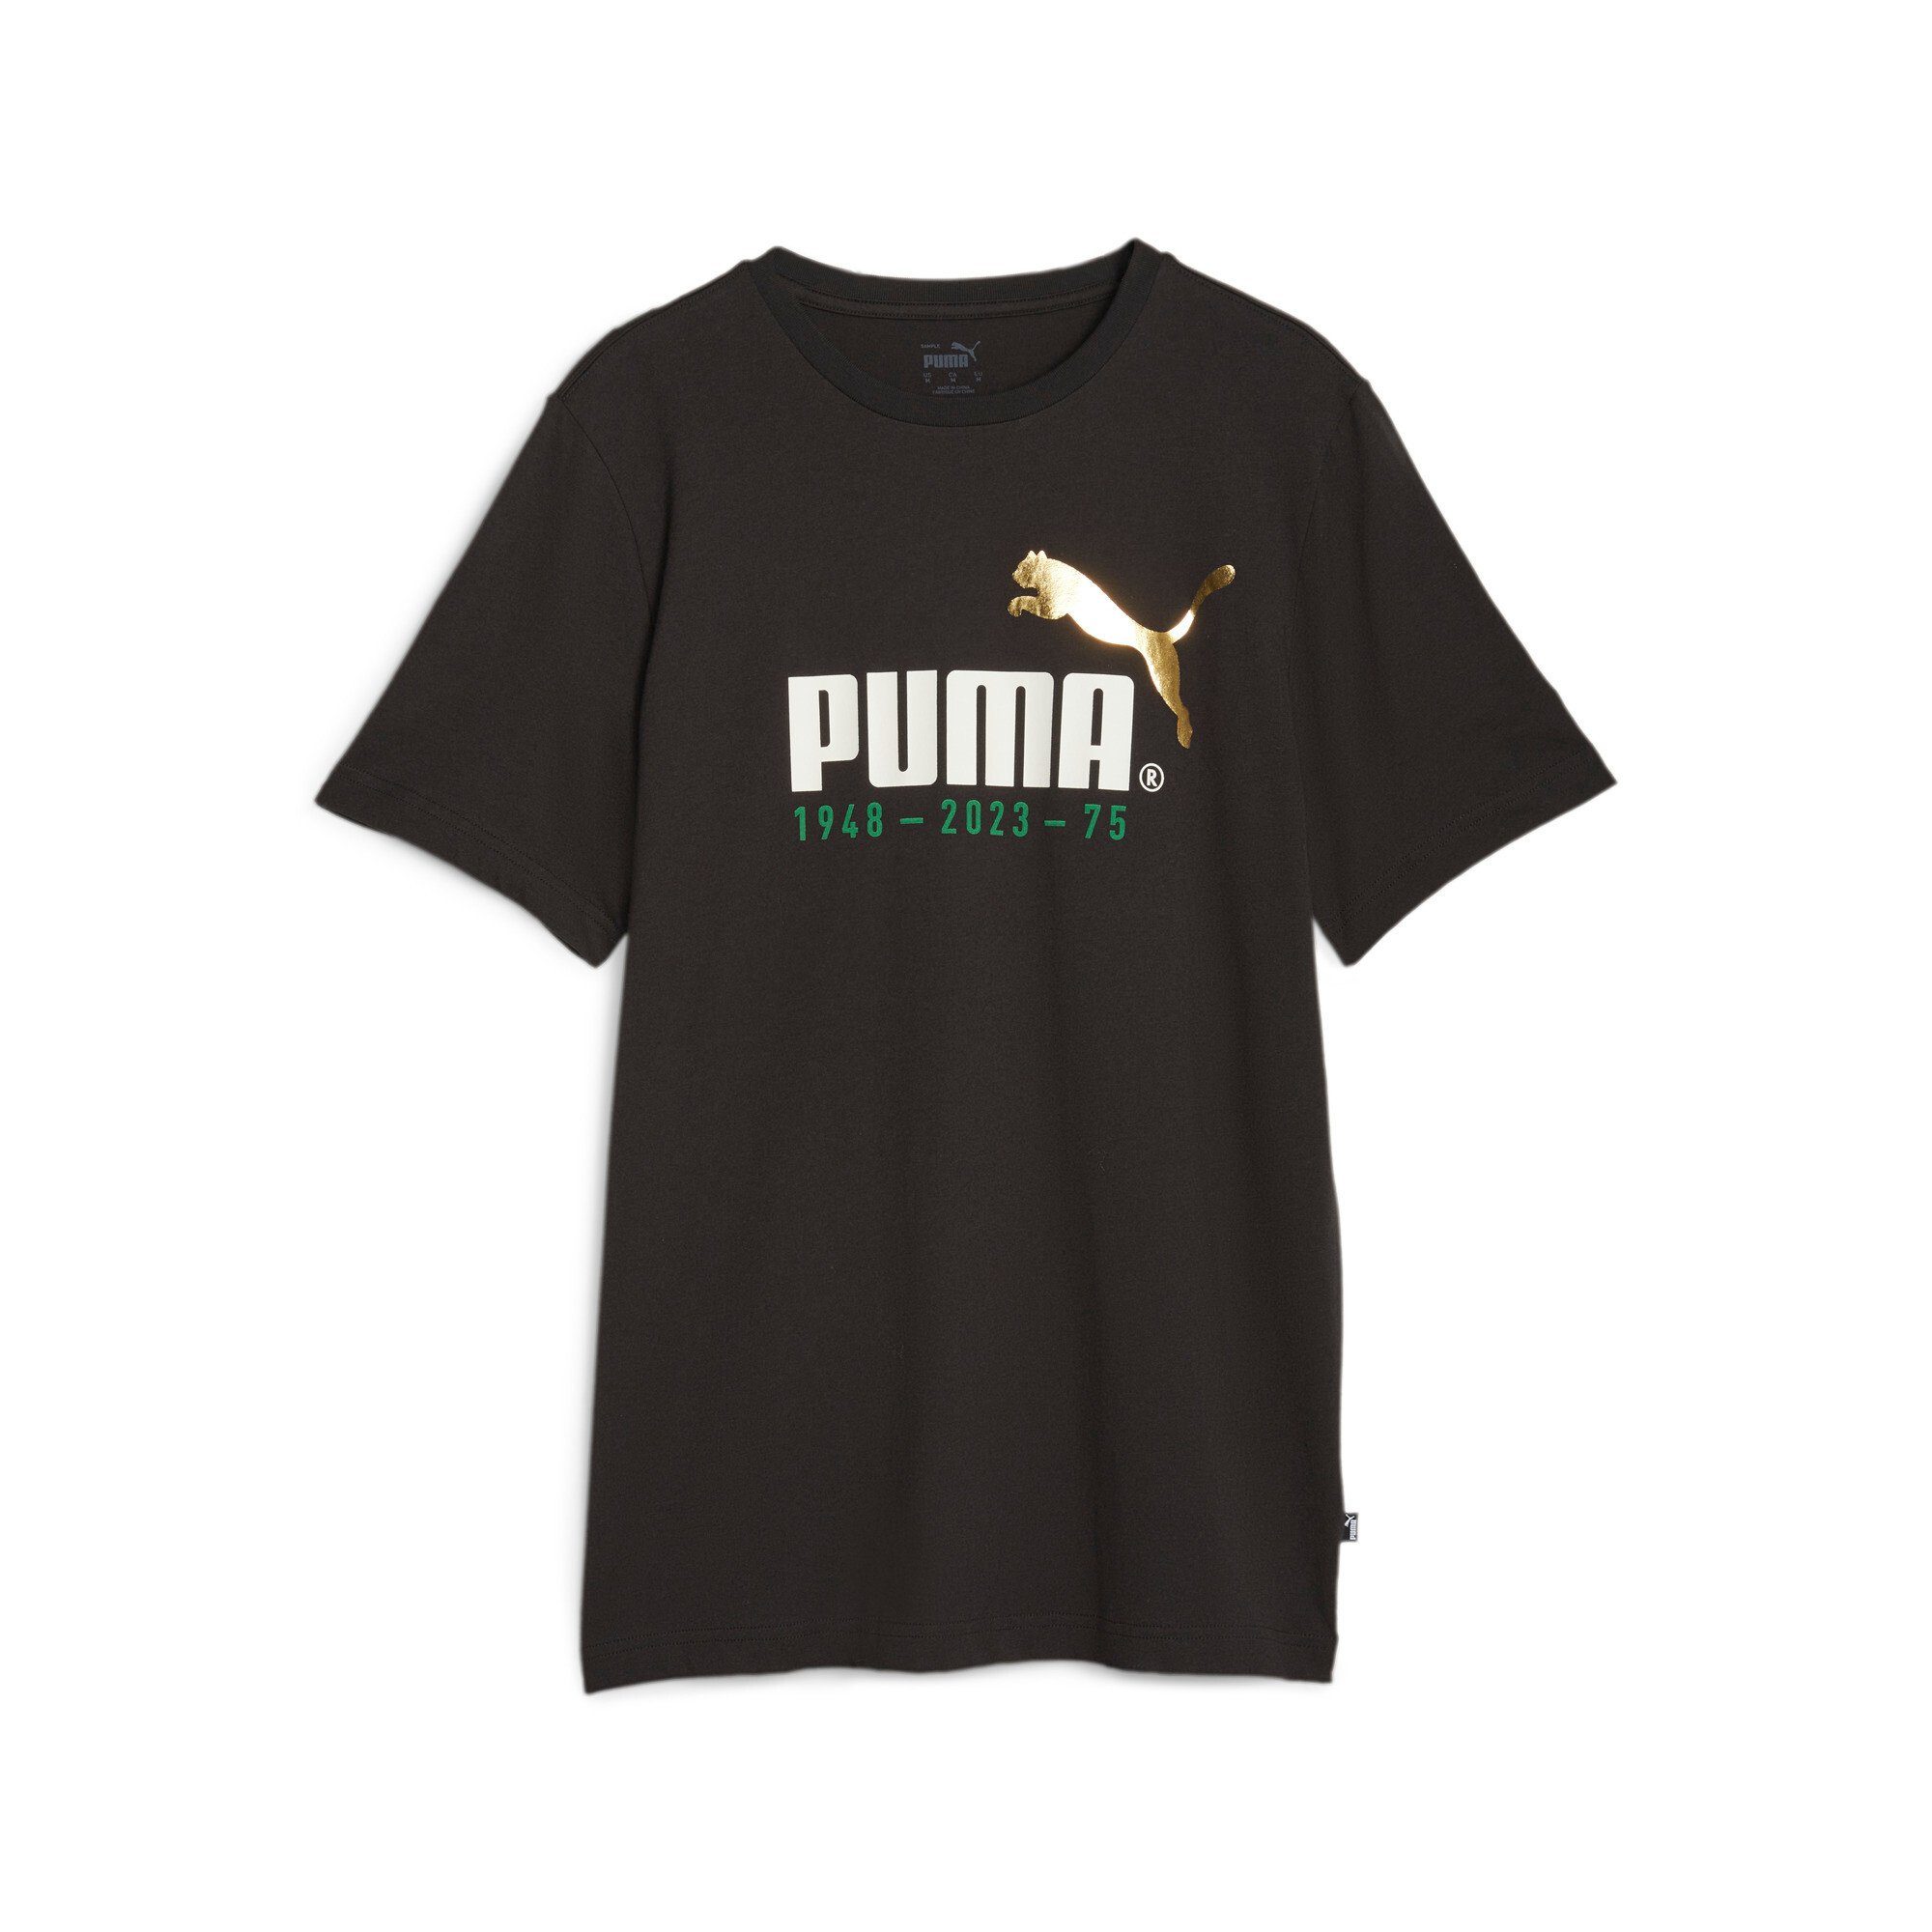 PUMA T-Shirt NO. TEE 1 PUMA Black LOGO CELEBRATION